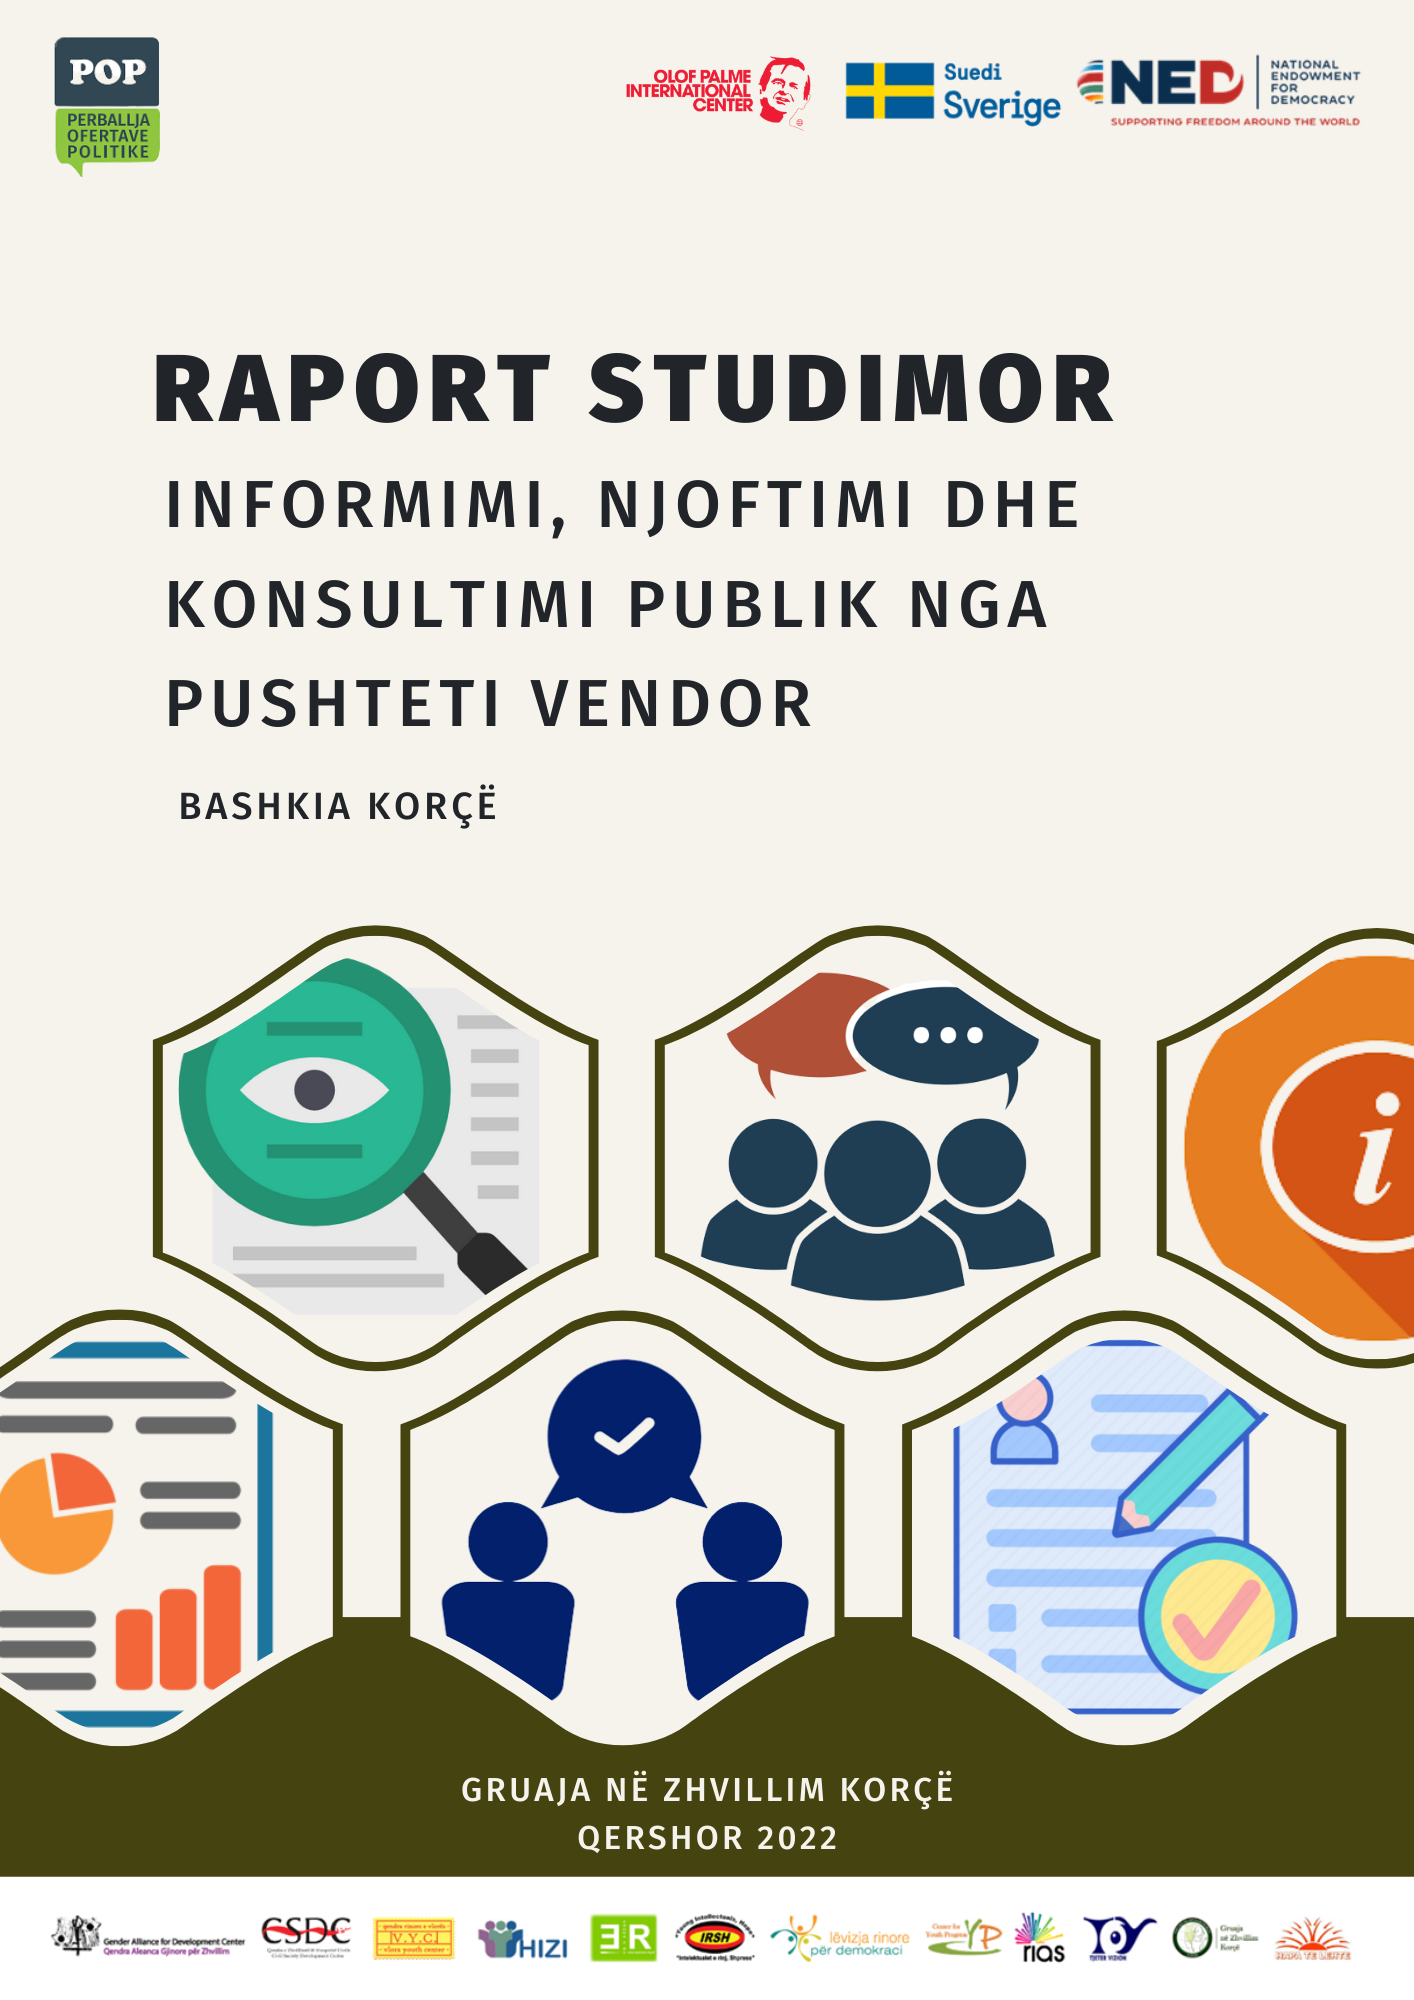 Raporti Studimor “Informimi, Njoftimi dhe Konsultimi Publik” – Bashkia Korçë